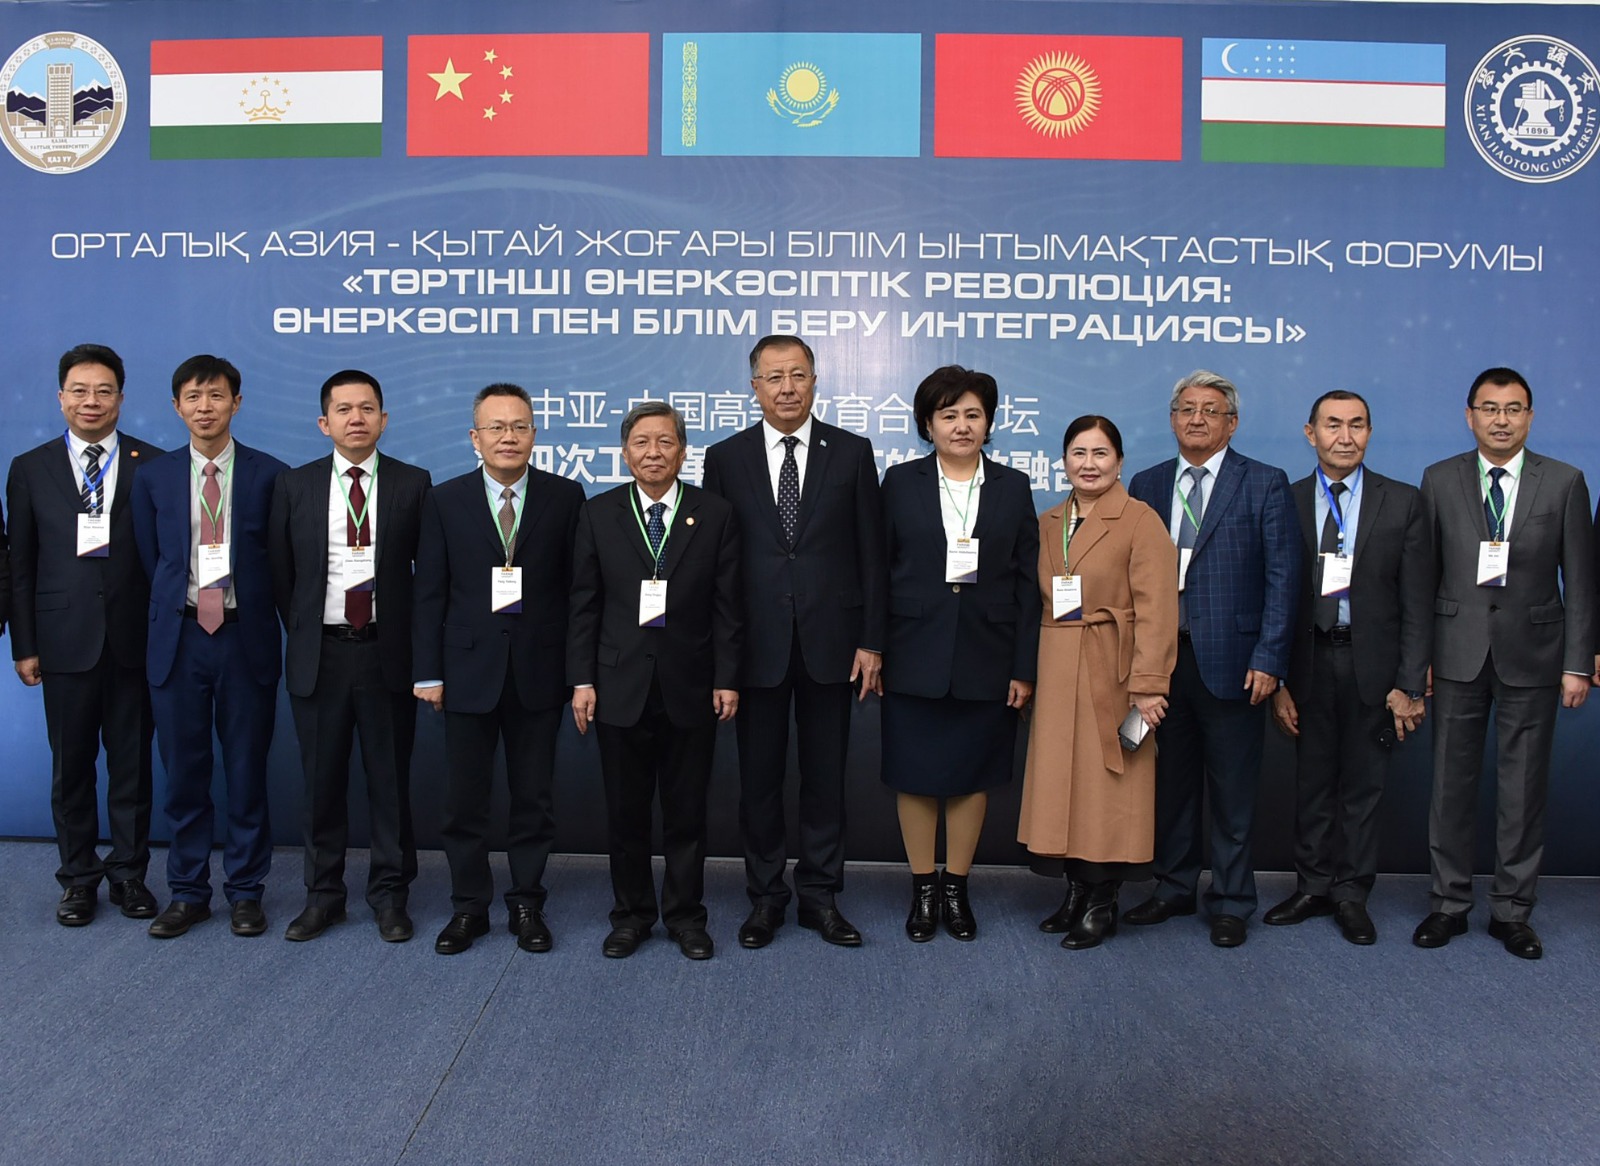 ҚазҰУ-да Қытай-Орталық Азия жоғары оқу орындарының форумы өтті